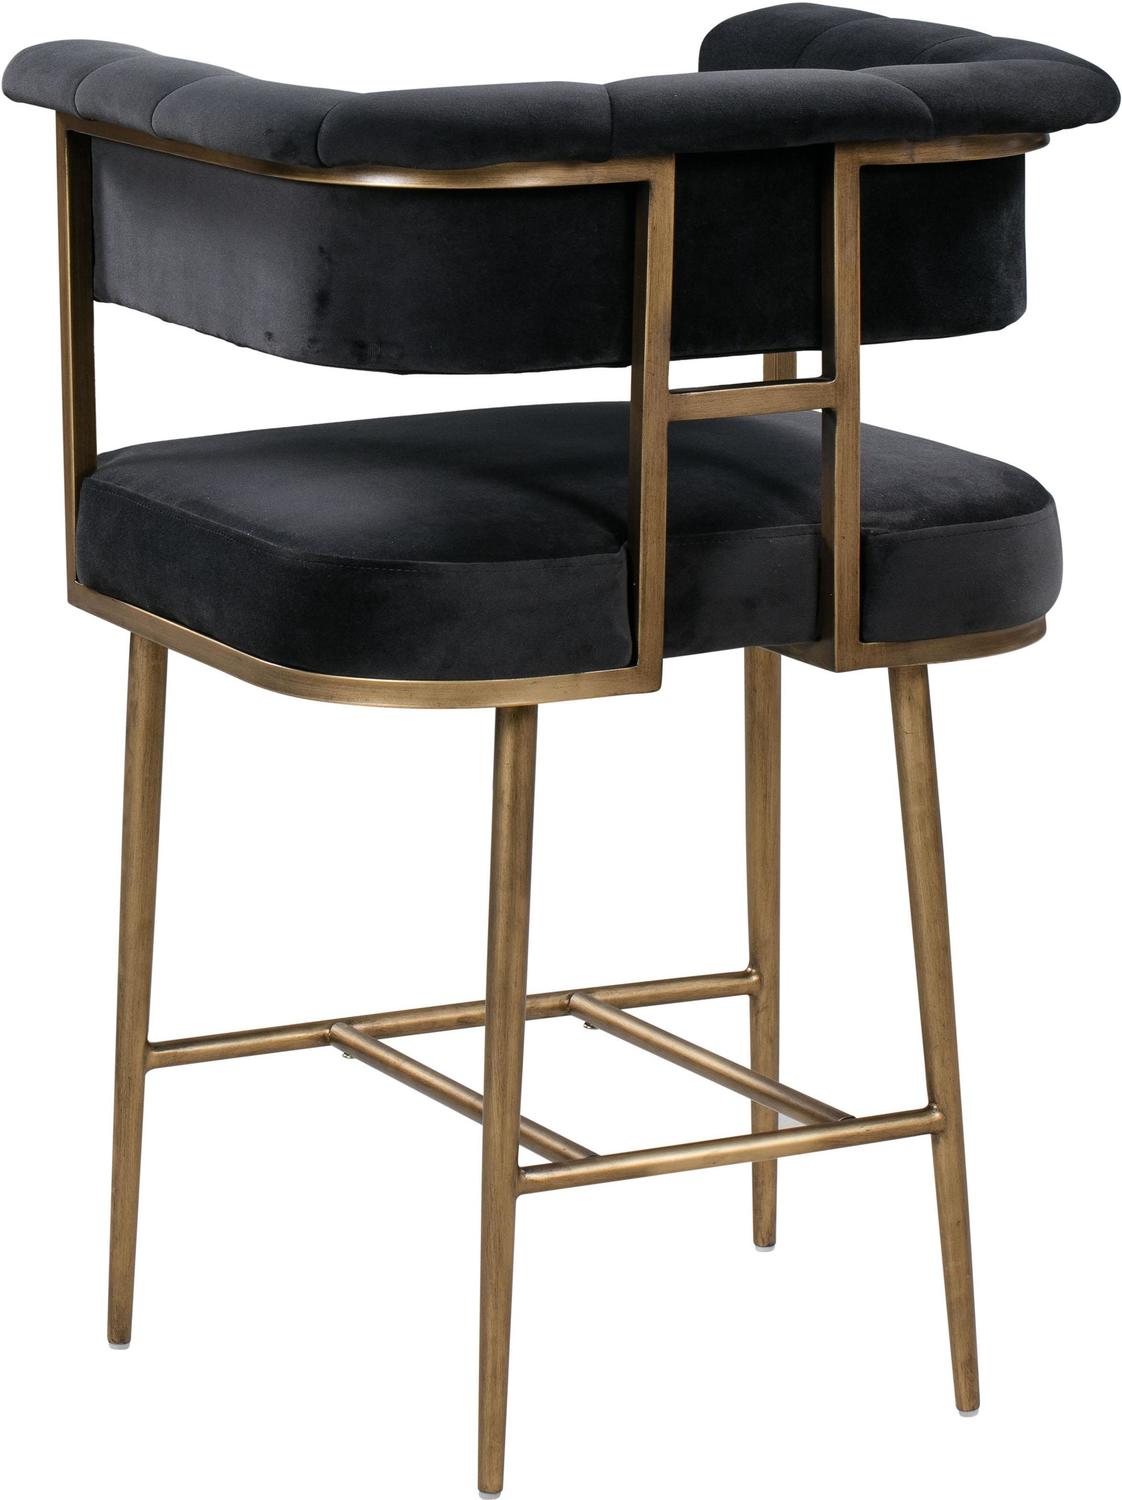 grey wooden bar stools Tov Furniture Stools Bar Chairs and Stools Grey